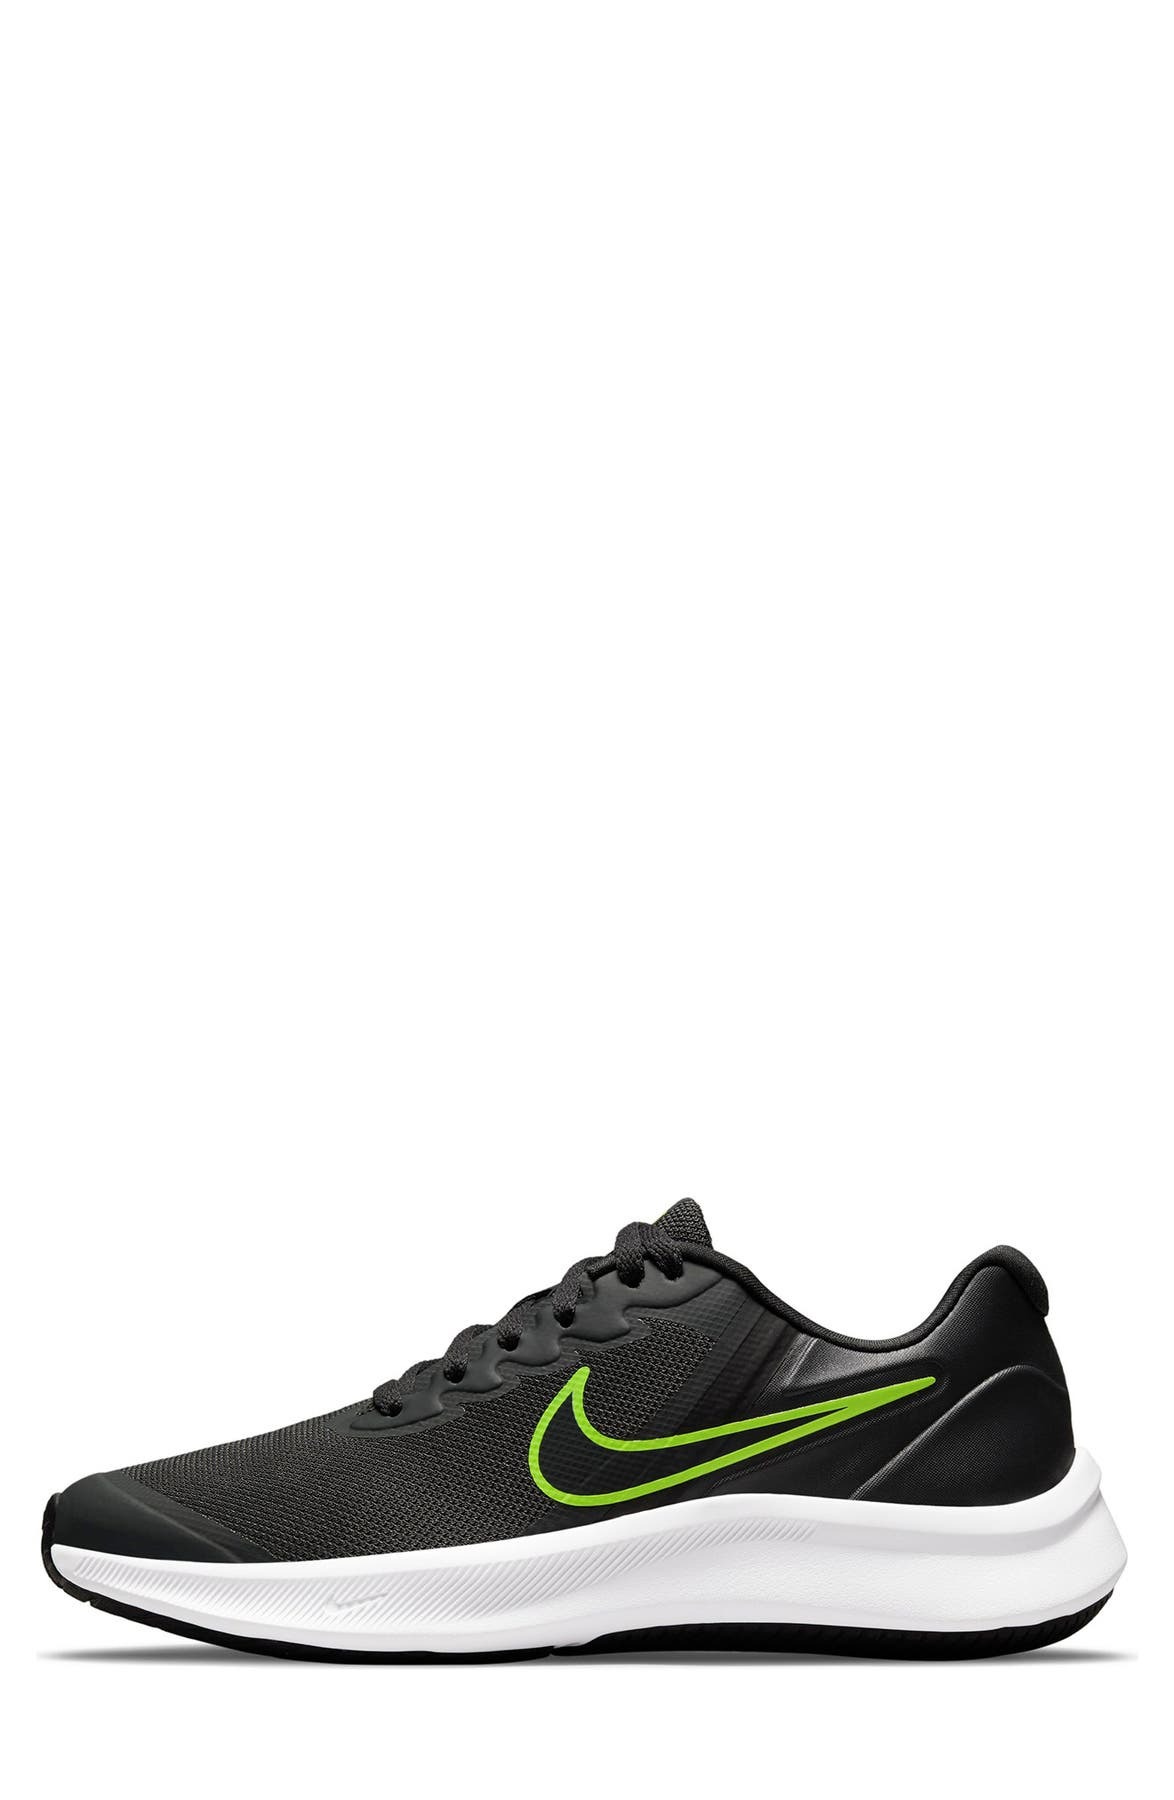 Star Runner 3 Running Shoe (Big Kid) Nike